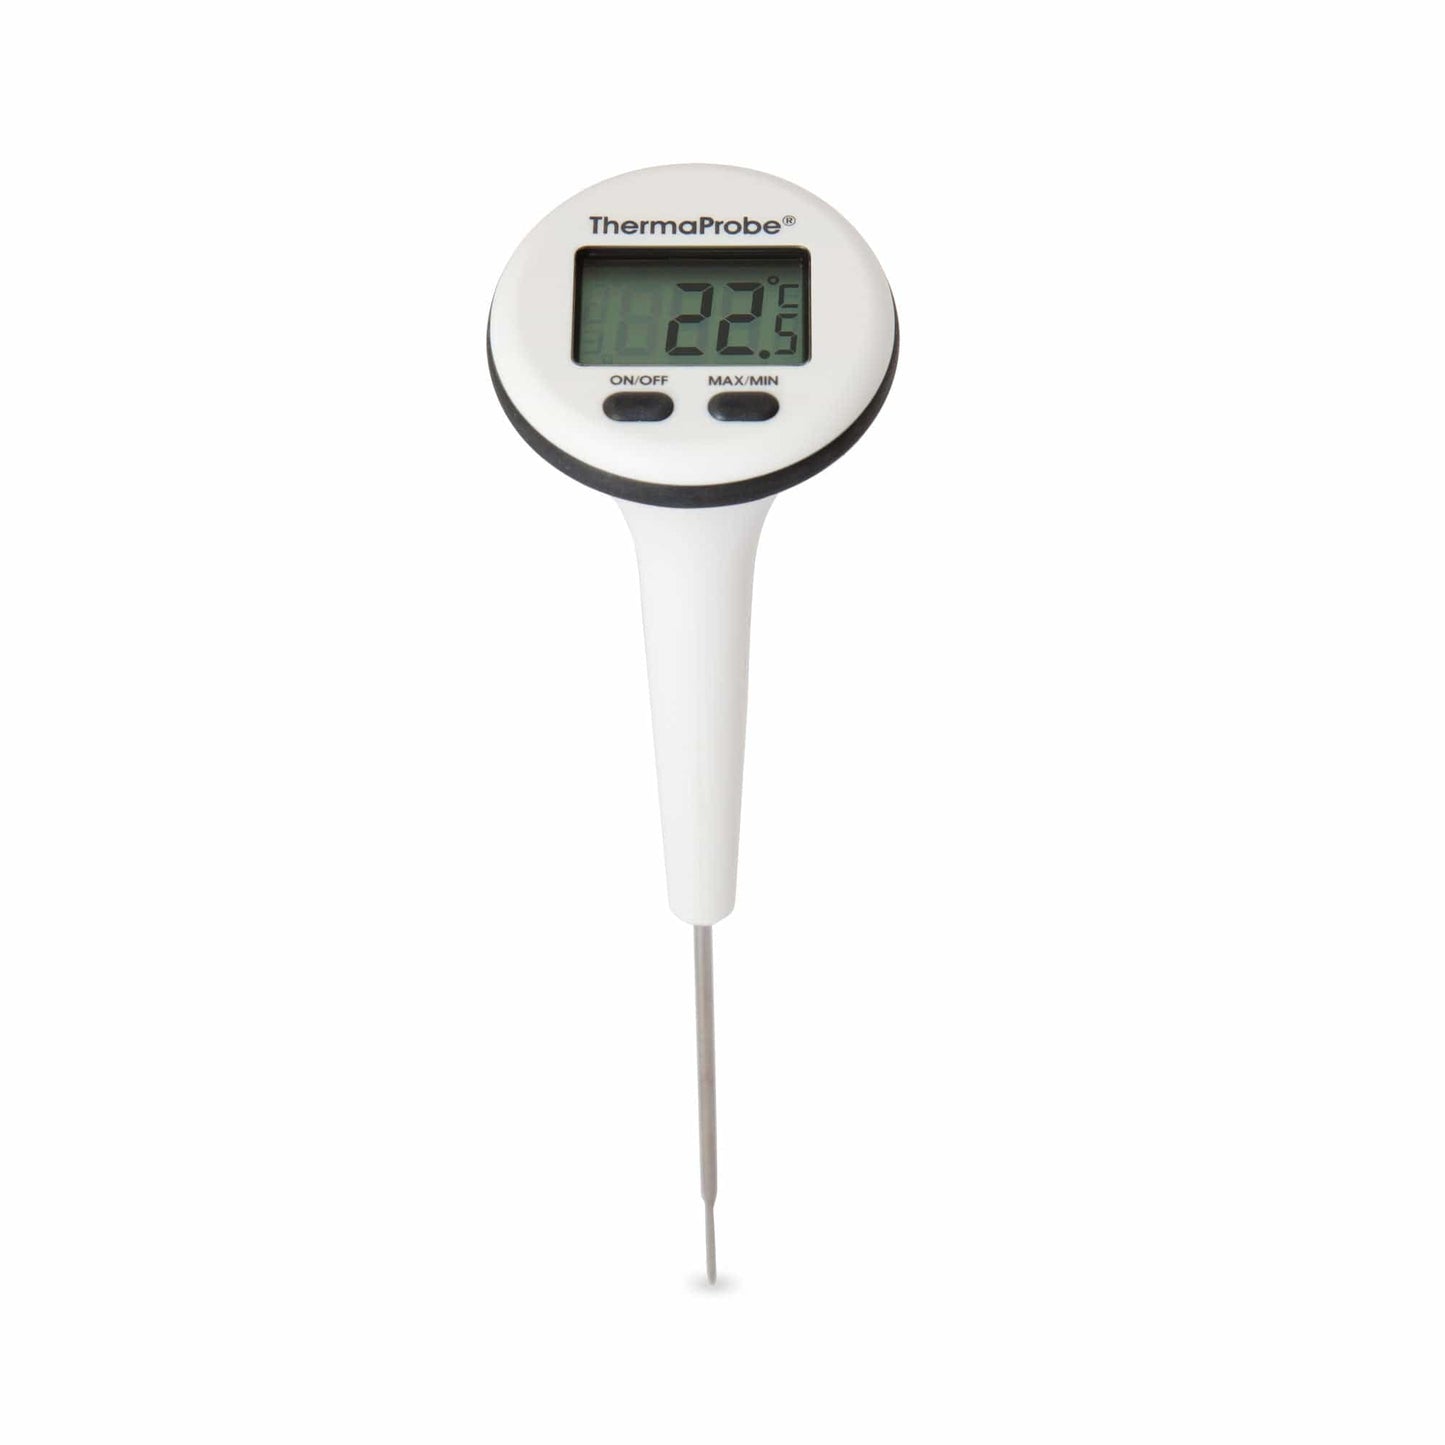 un Thermomètre étanche ThermaProbe à affichage rotatif sur fond blanc de Thermometre.fr.